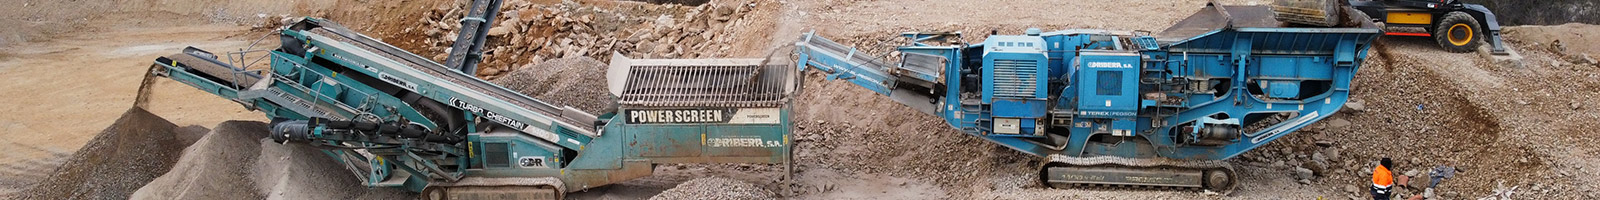 Ejecución de grandes y pequeñas obras de excavaciones de tierra, escombros, urbanizaciones y reciclaje - TRANSPORTS I EXCAVACIONS RIBERA